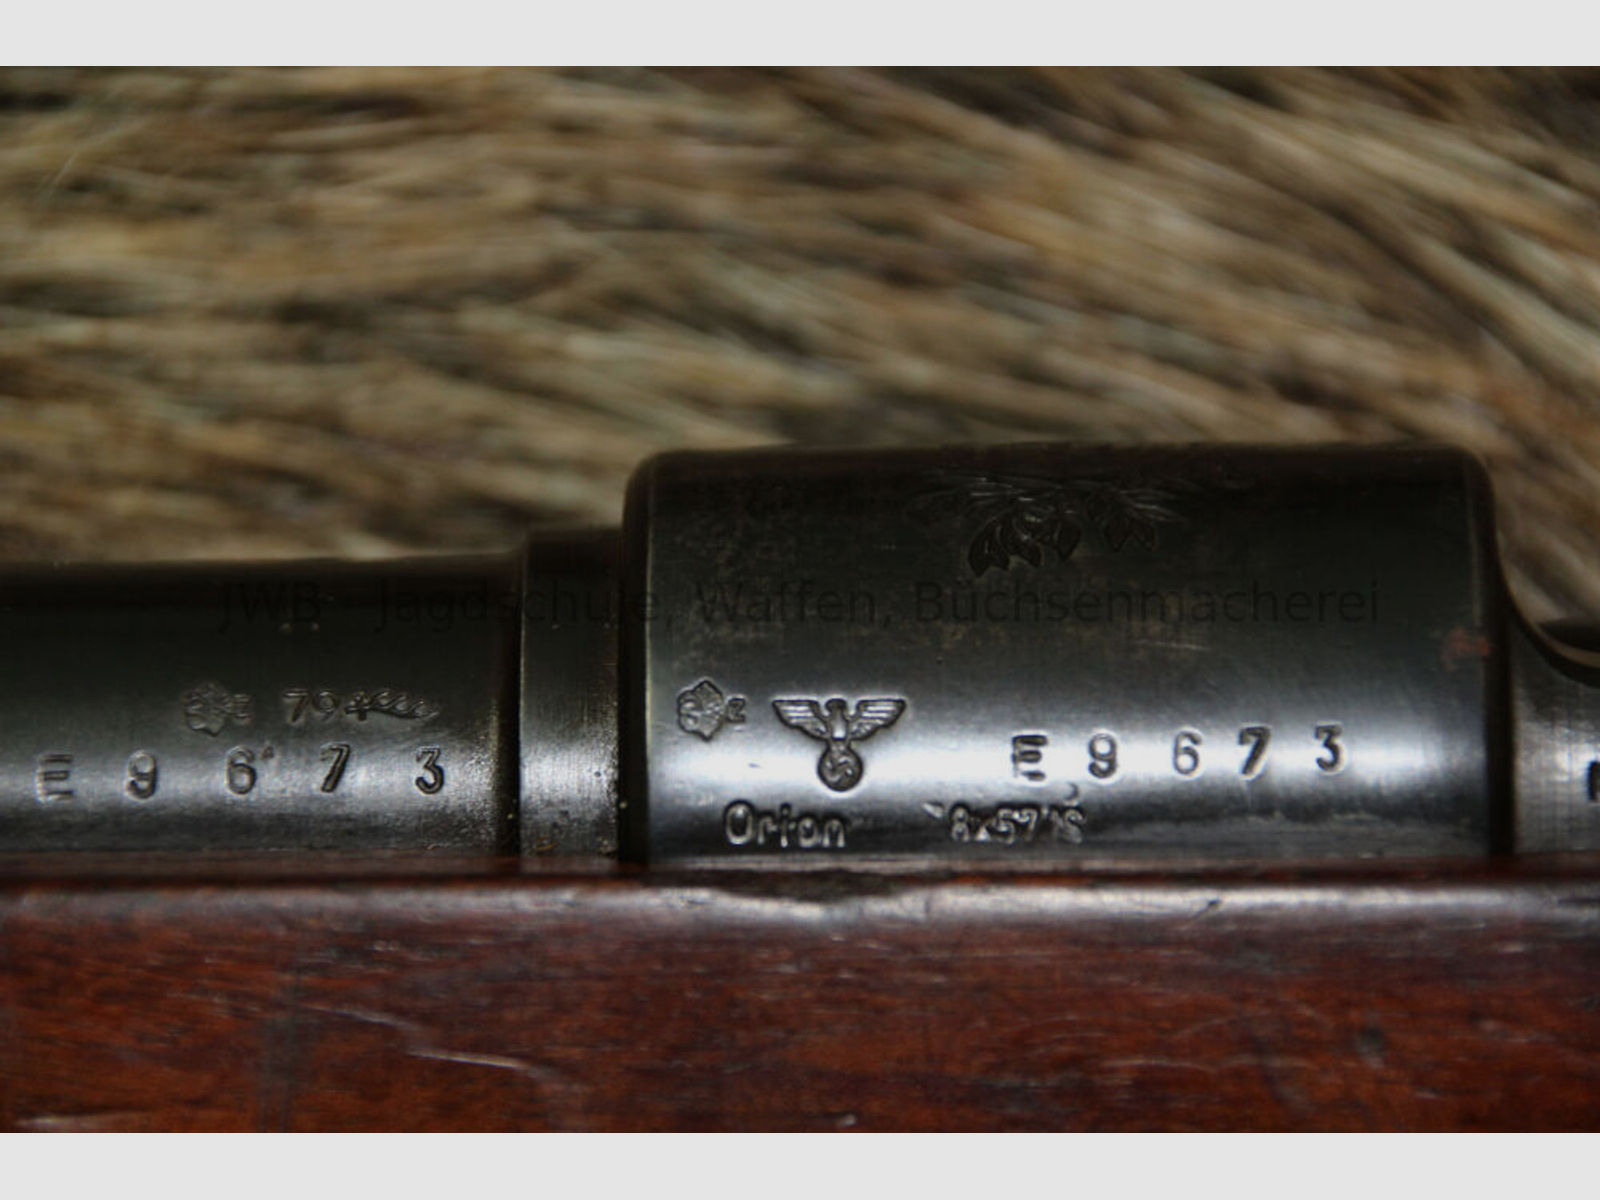 Portugal - Mauser in absolutem Sammlerzustand (nummerngleich incl. Schraube